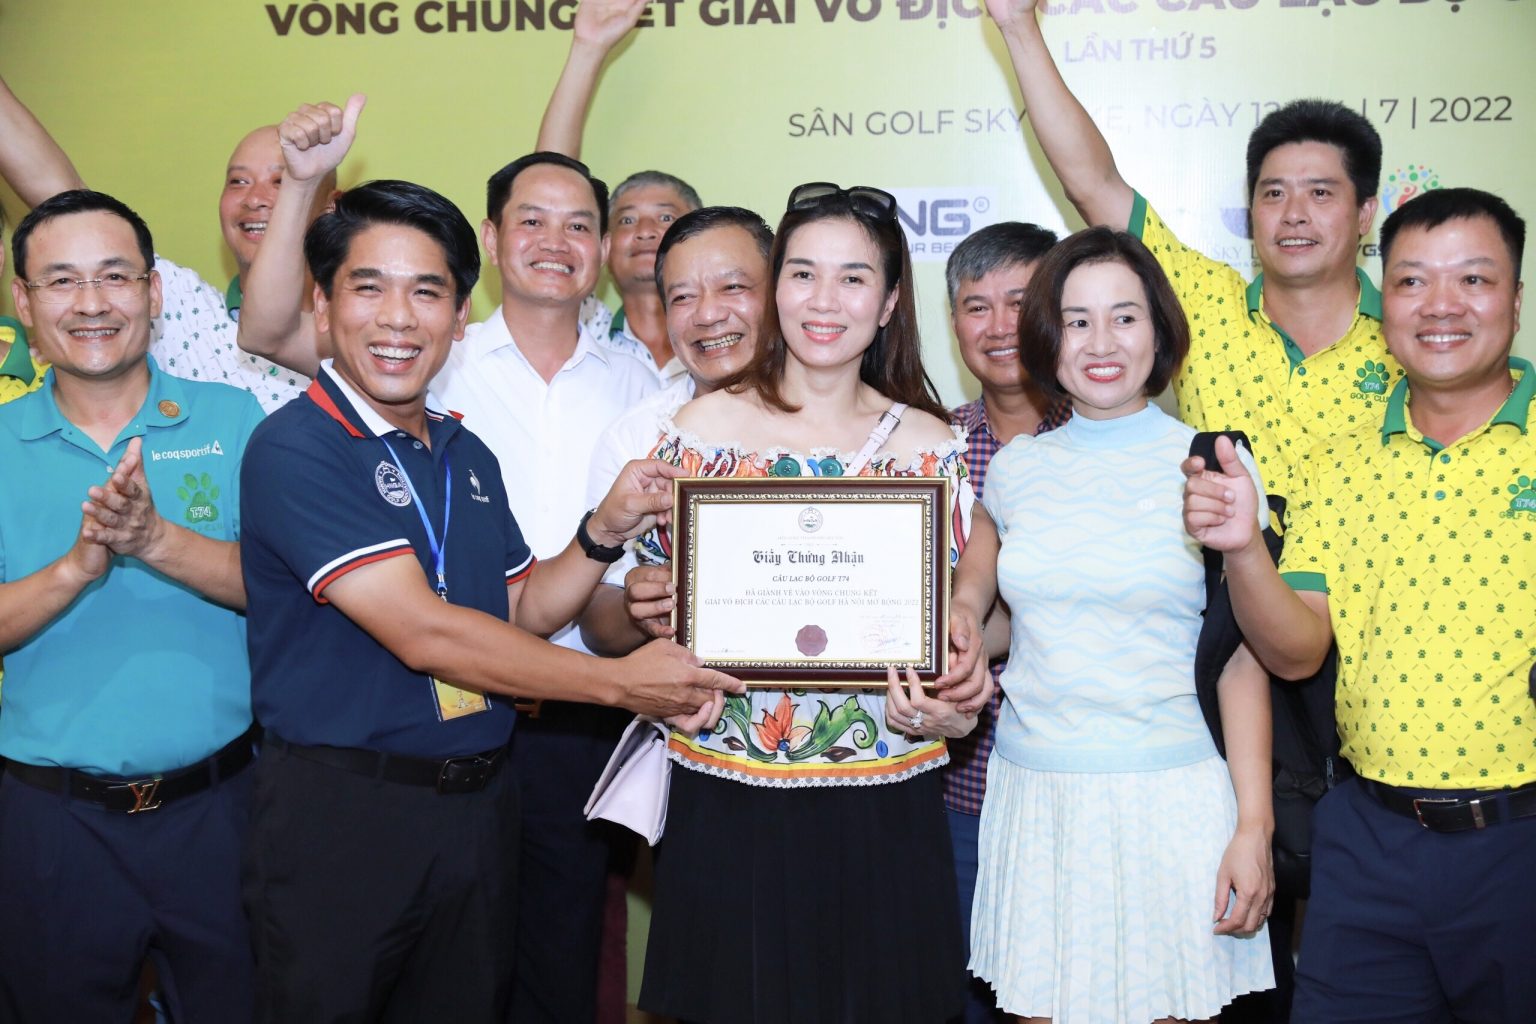 Thêm T74, Đông Anh và 3 CLB khác giành vé vào VCK giải golf CLB Hà Nội mở rộng 2022